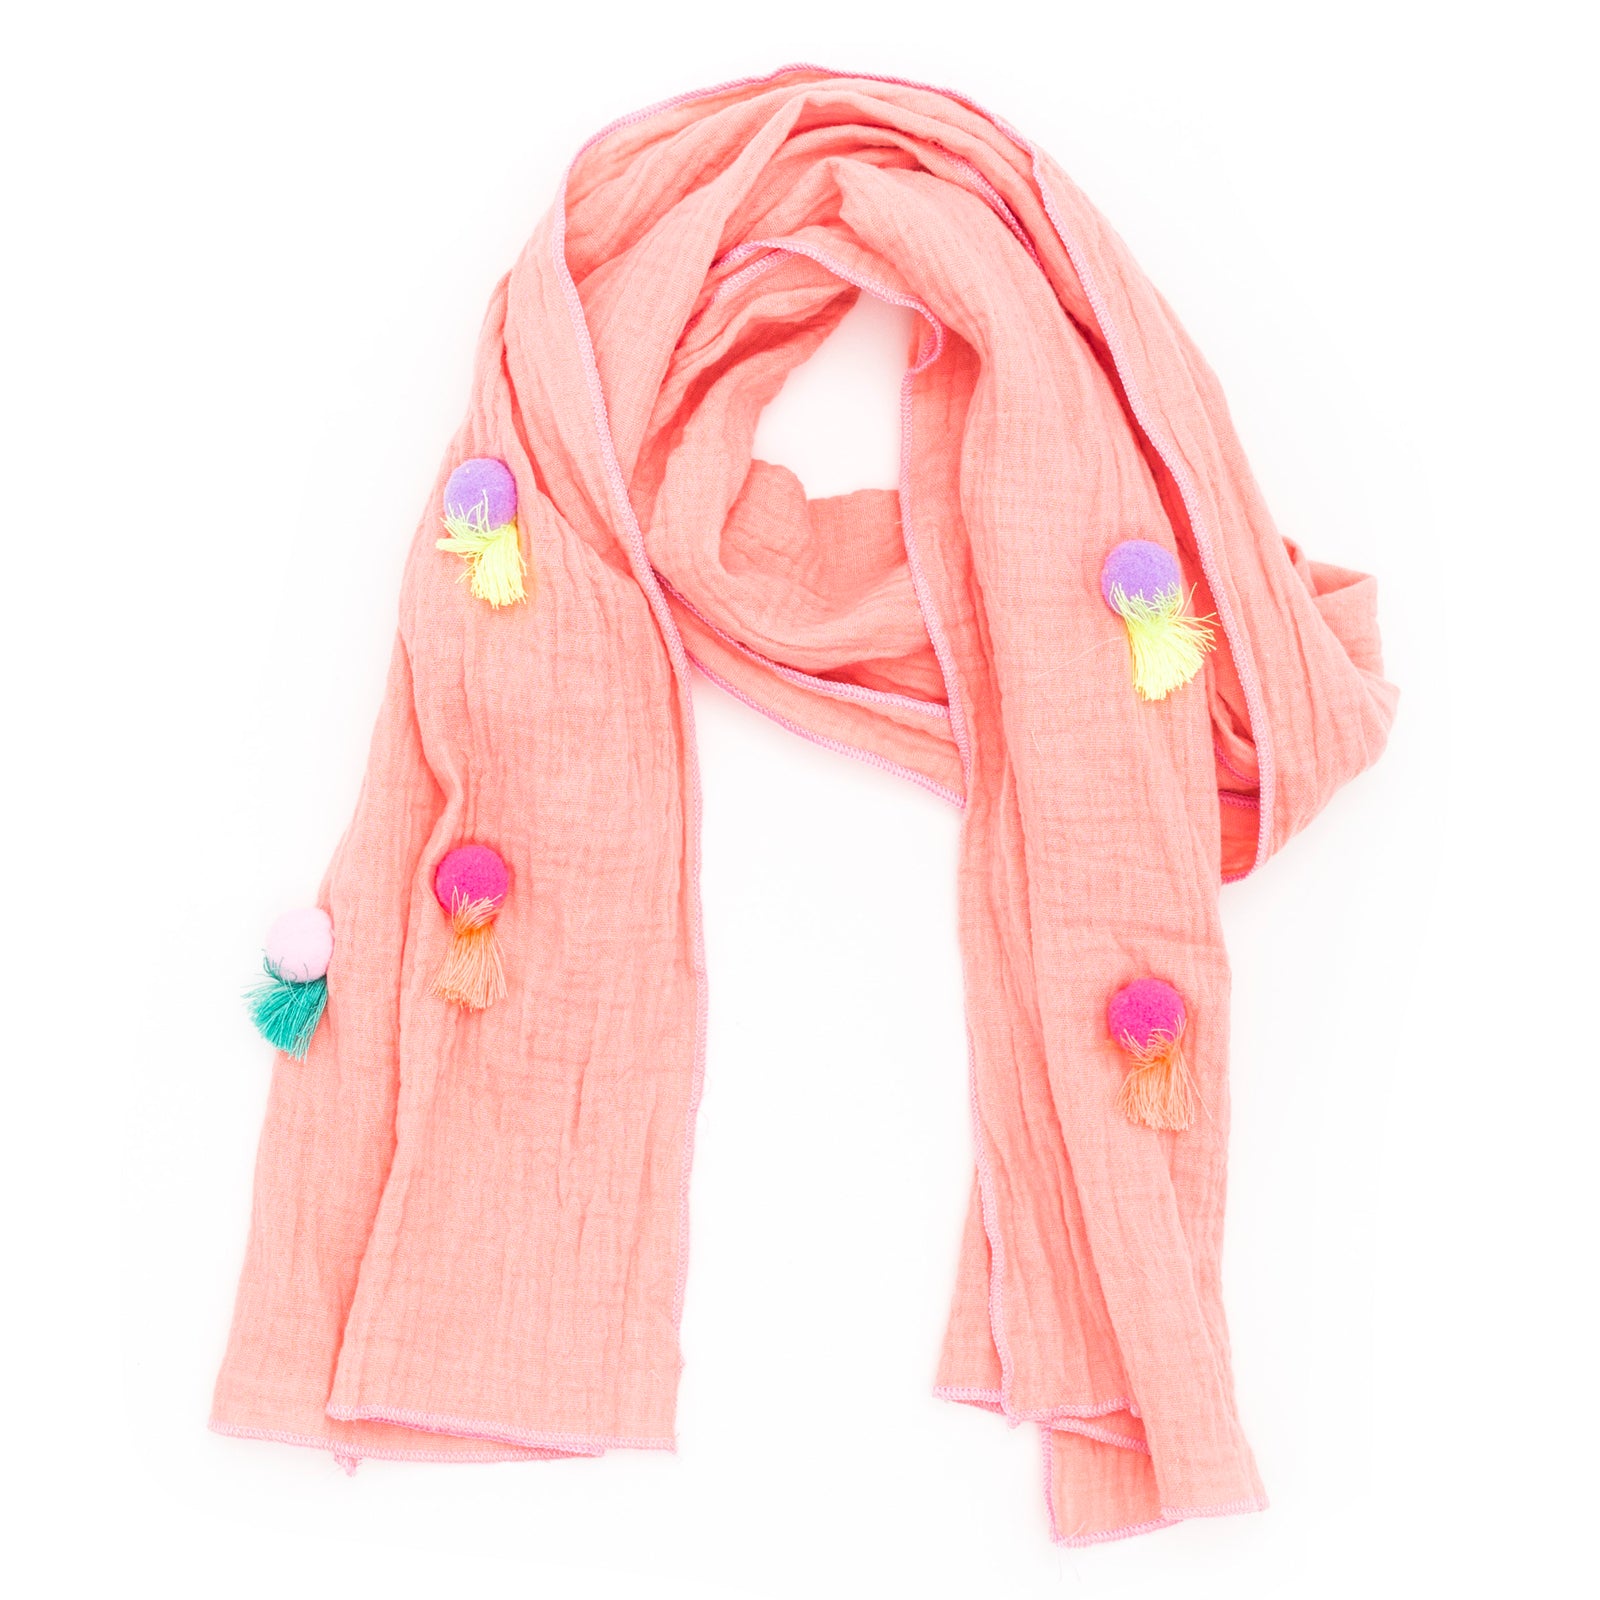 Pom pom with tassels scarf - Peach